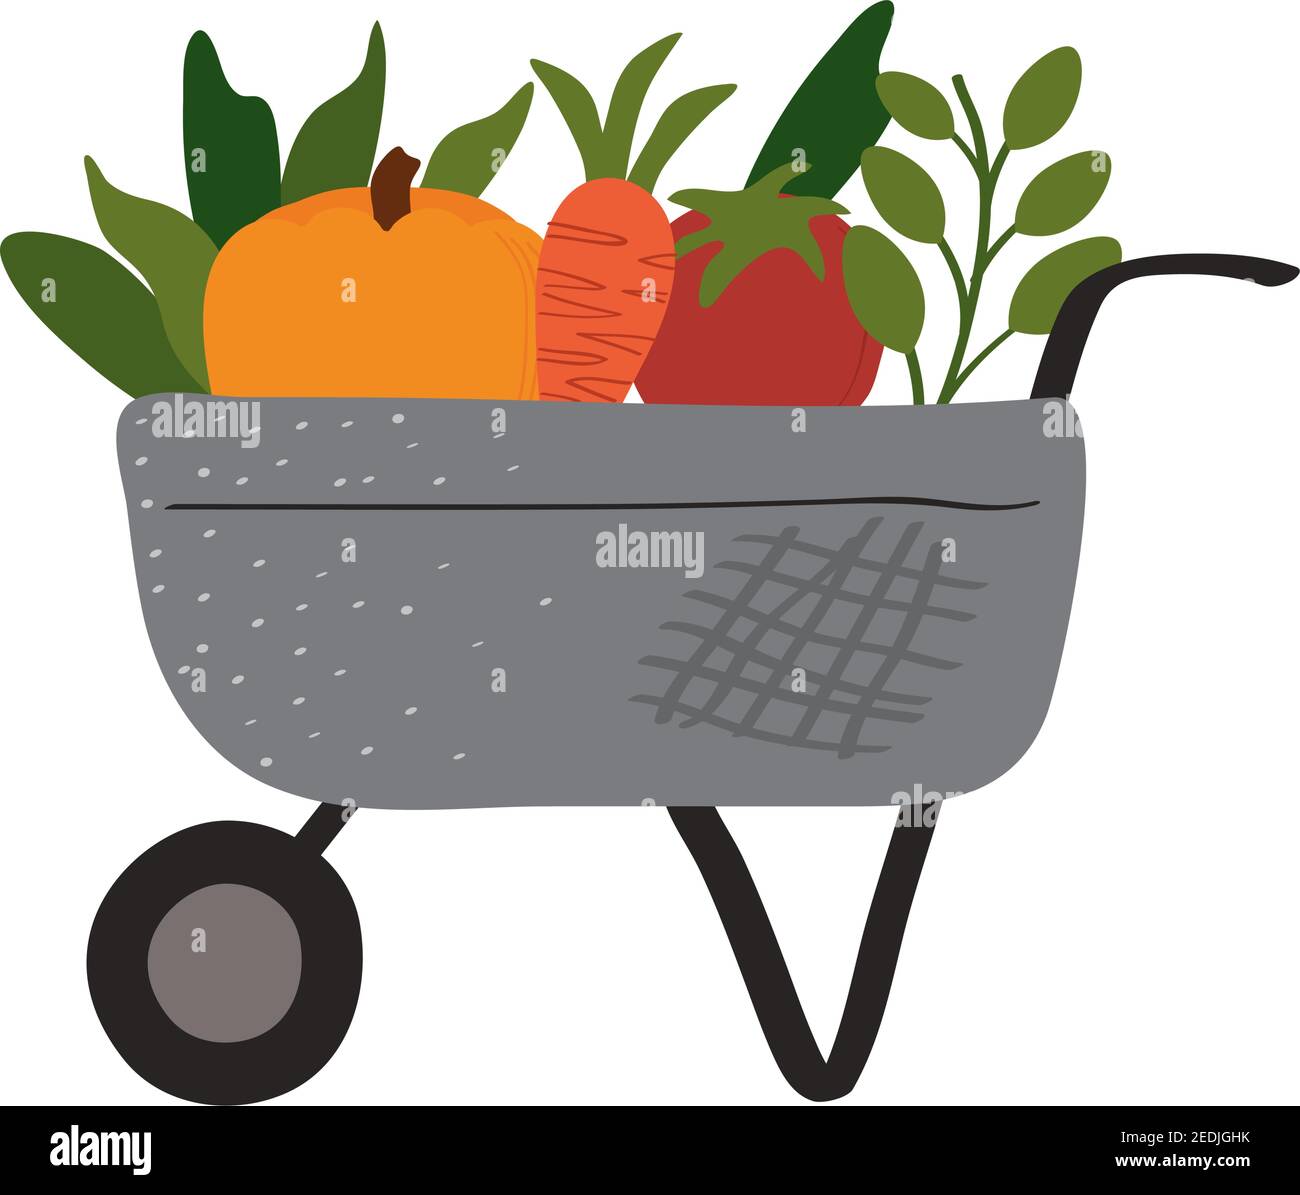 wheelbarrow farm tool with vegetables vector illustration design Stock Vector